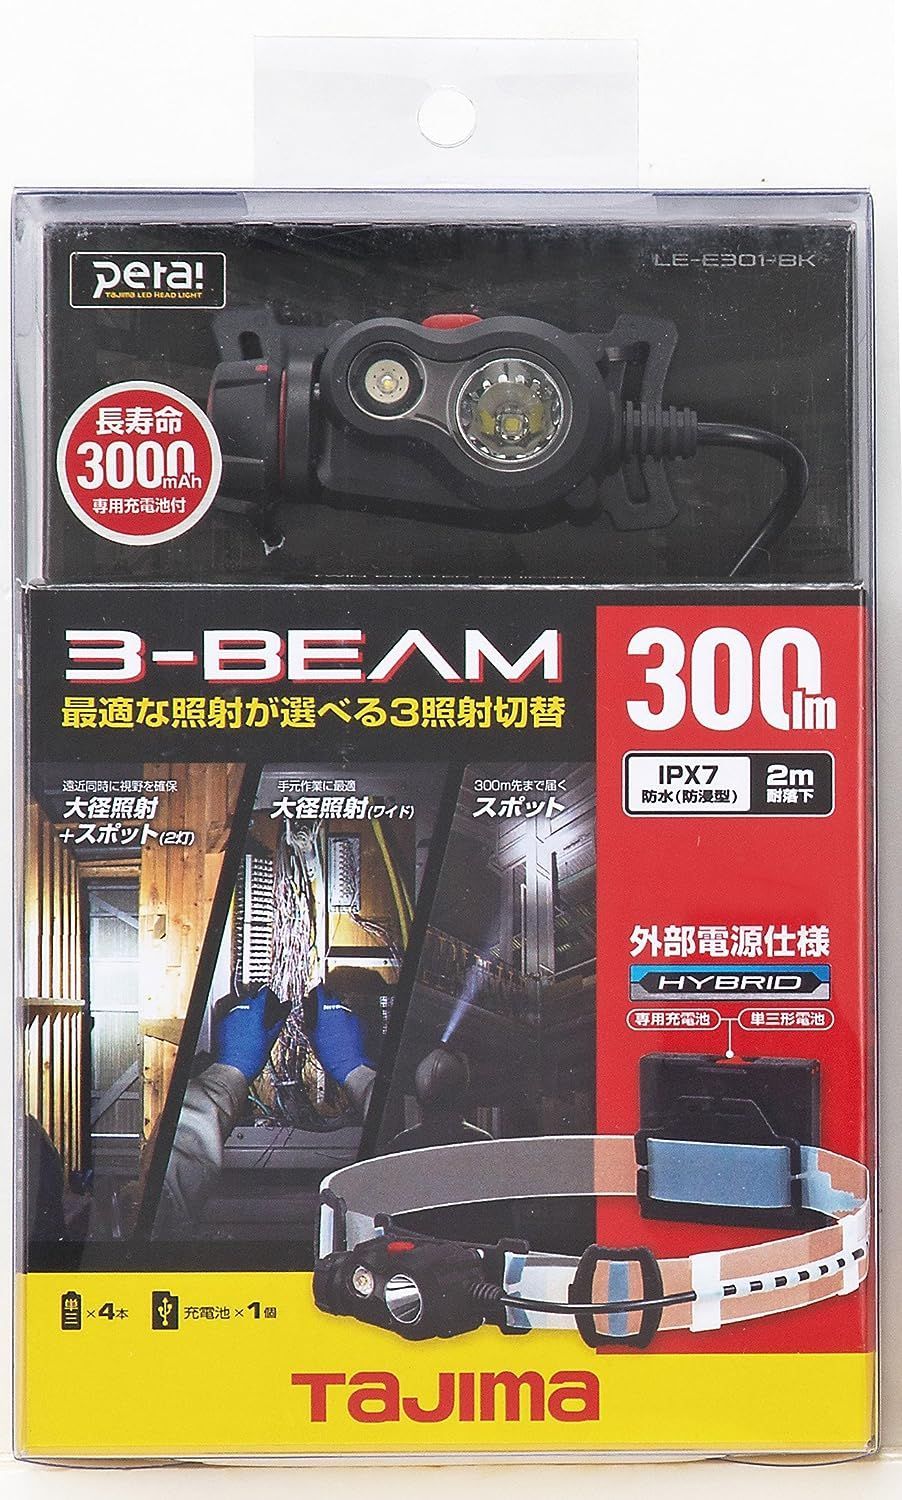 新品 タジマ Tajima ペタLEDヘッドライトE301ブ 大300lm 50lm時18h点灯 LE-E301-BK 386 Flat Baby  メルカリ